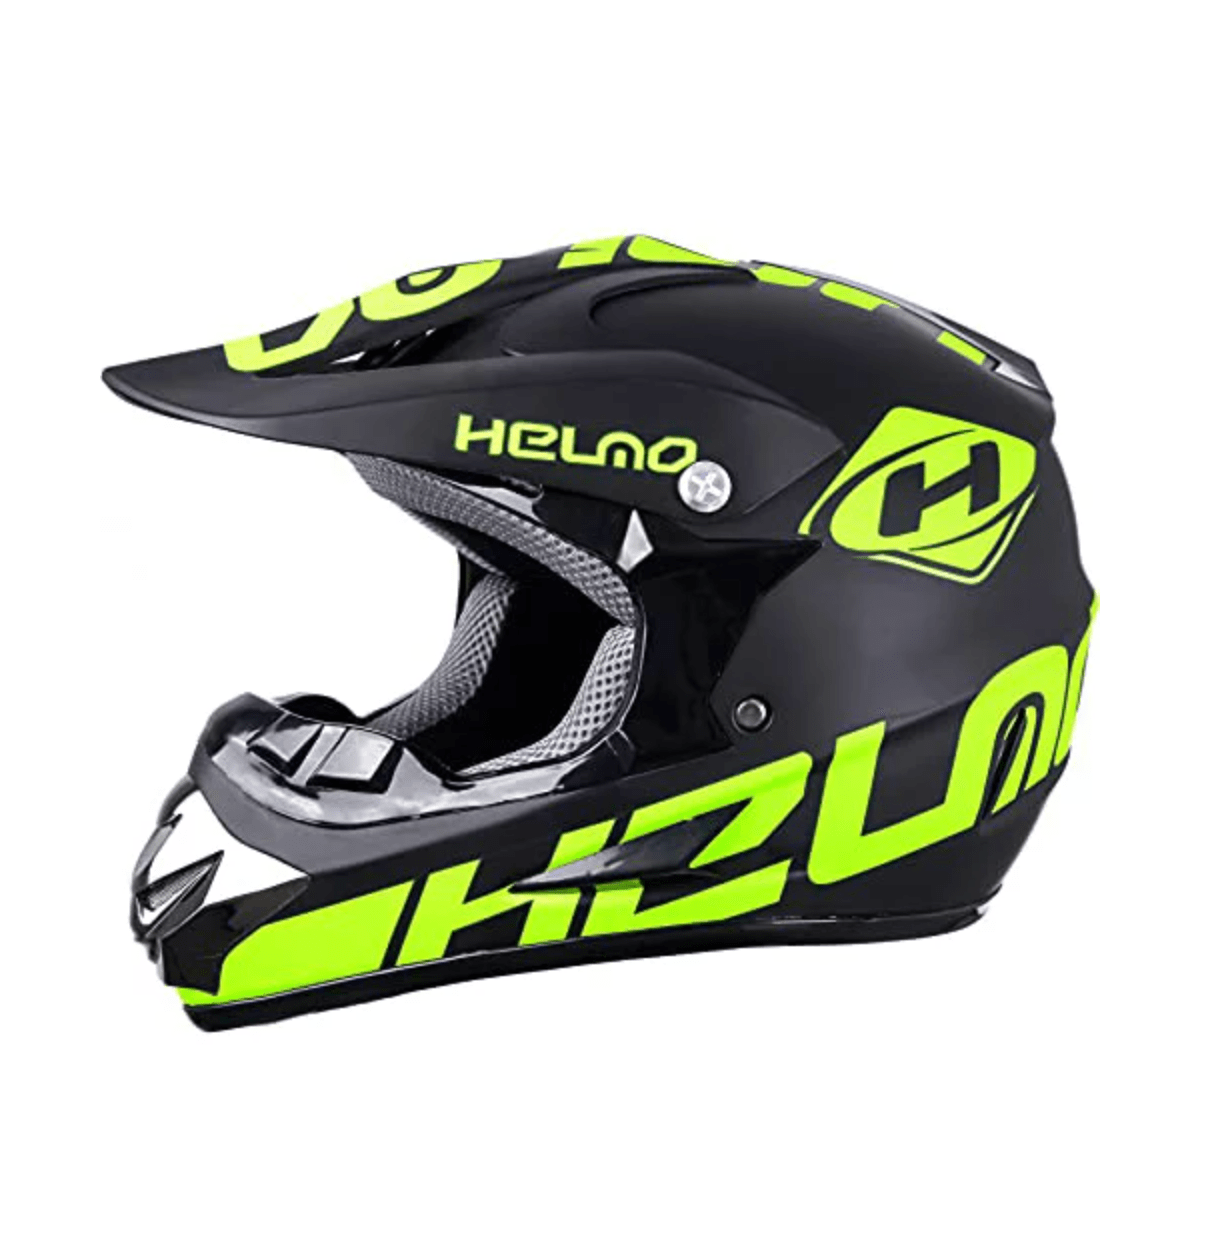 HELMO ヘルメット ヘルメットオフロード システムヘルメット バイクヘルメット 蛍光 ヘルメット 防寒 カッコいい オシャレ MATTA BLACK/GREEN YELLOW バイク フルフェイス ヘルメット OFF ROAD おしゃれ レアモデル 四季通用 通気吸汗 耐久性 耐衝撃性 初心者向け 3サイズ展開 M、L、XL